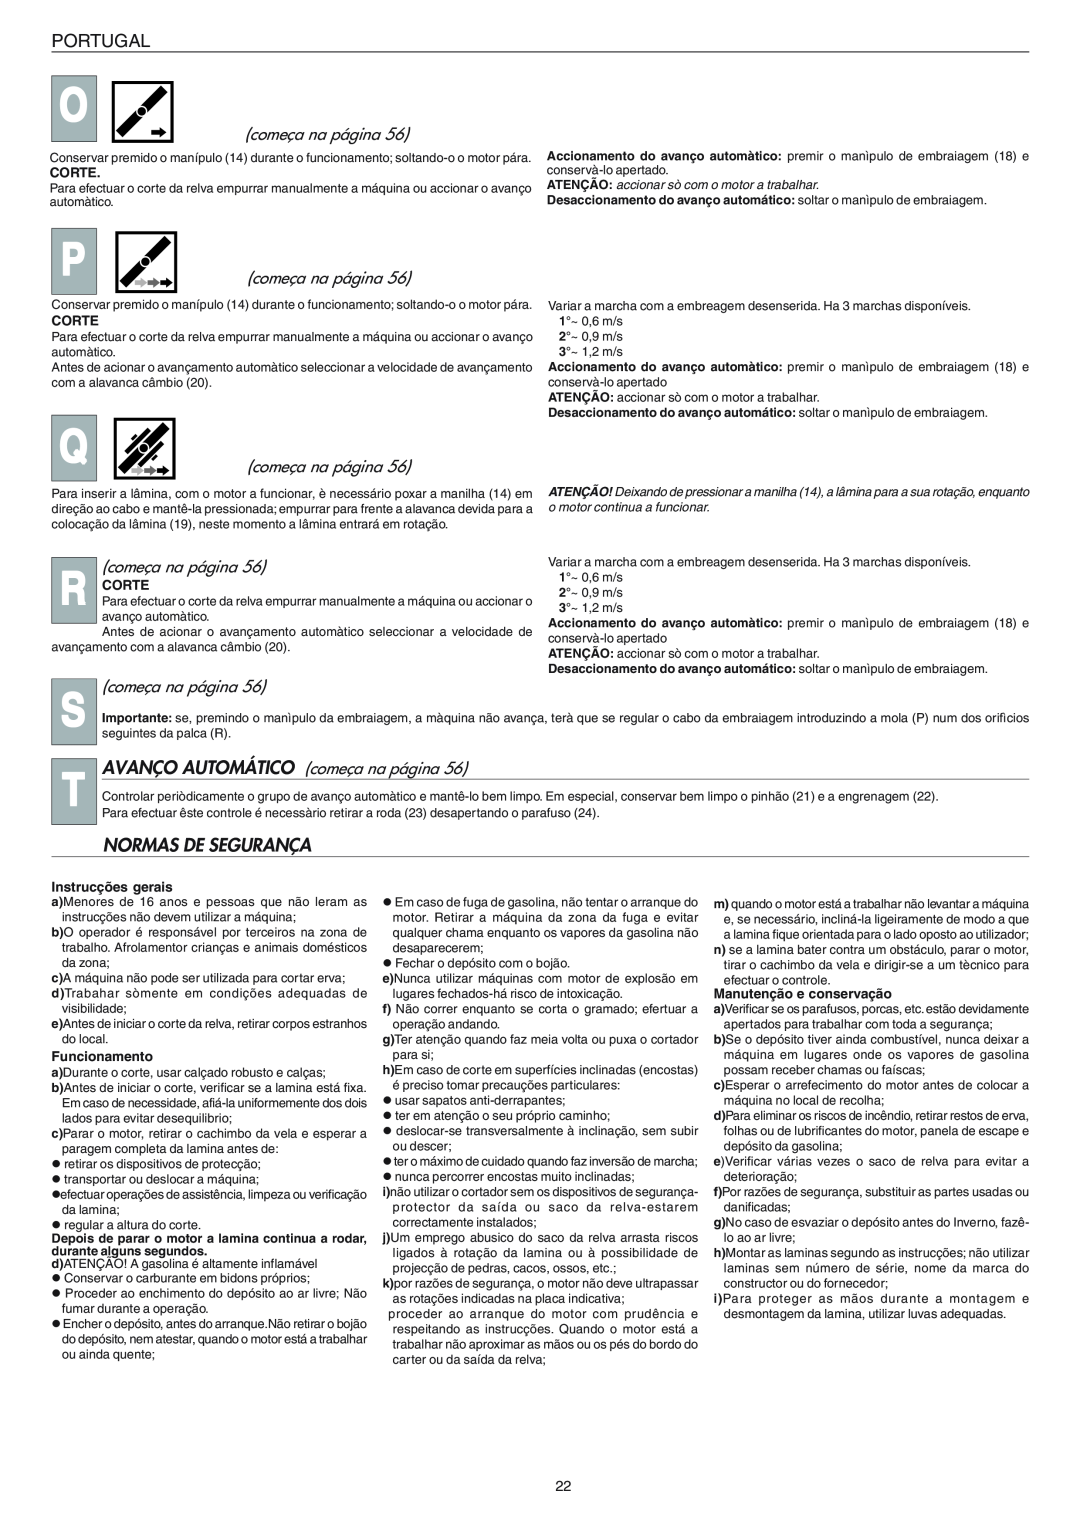 Husqvarna 153 S3 manual Normas De Segurança, Portugal, AVANÇO AUTOMÁTICO começa na página, Corte, Instrucções gerais 